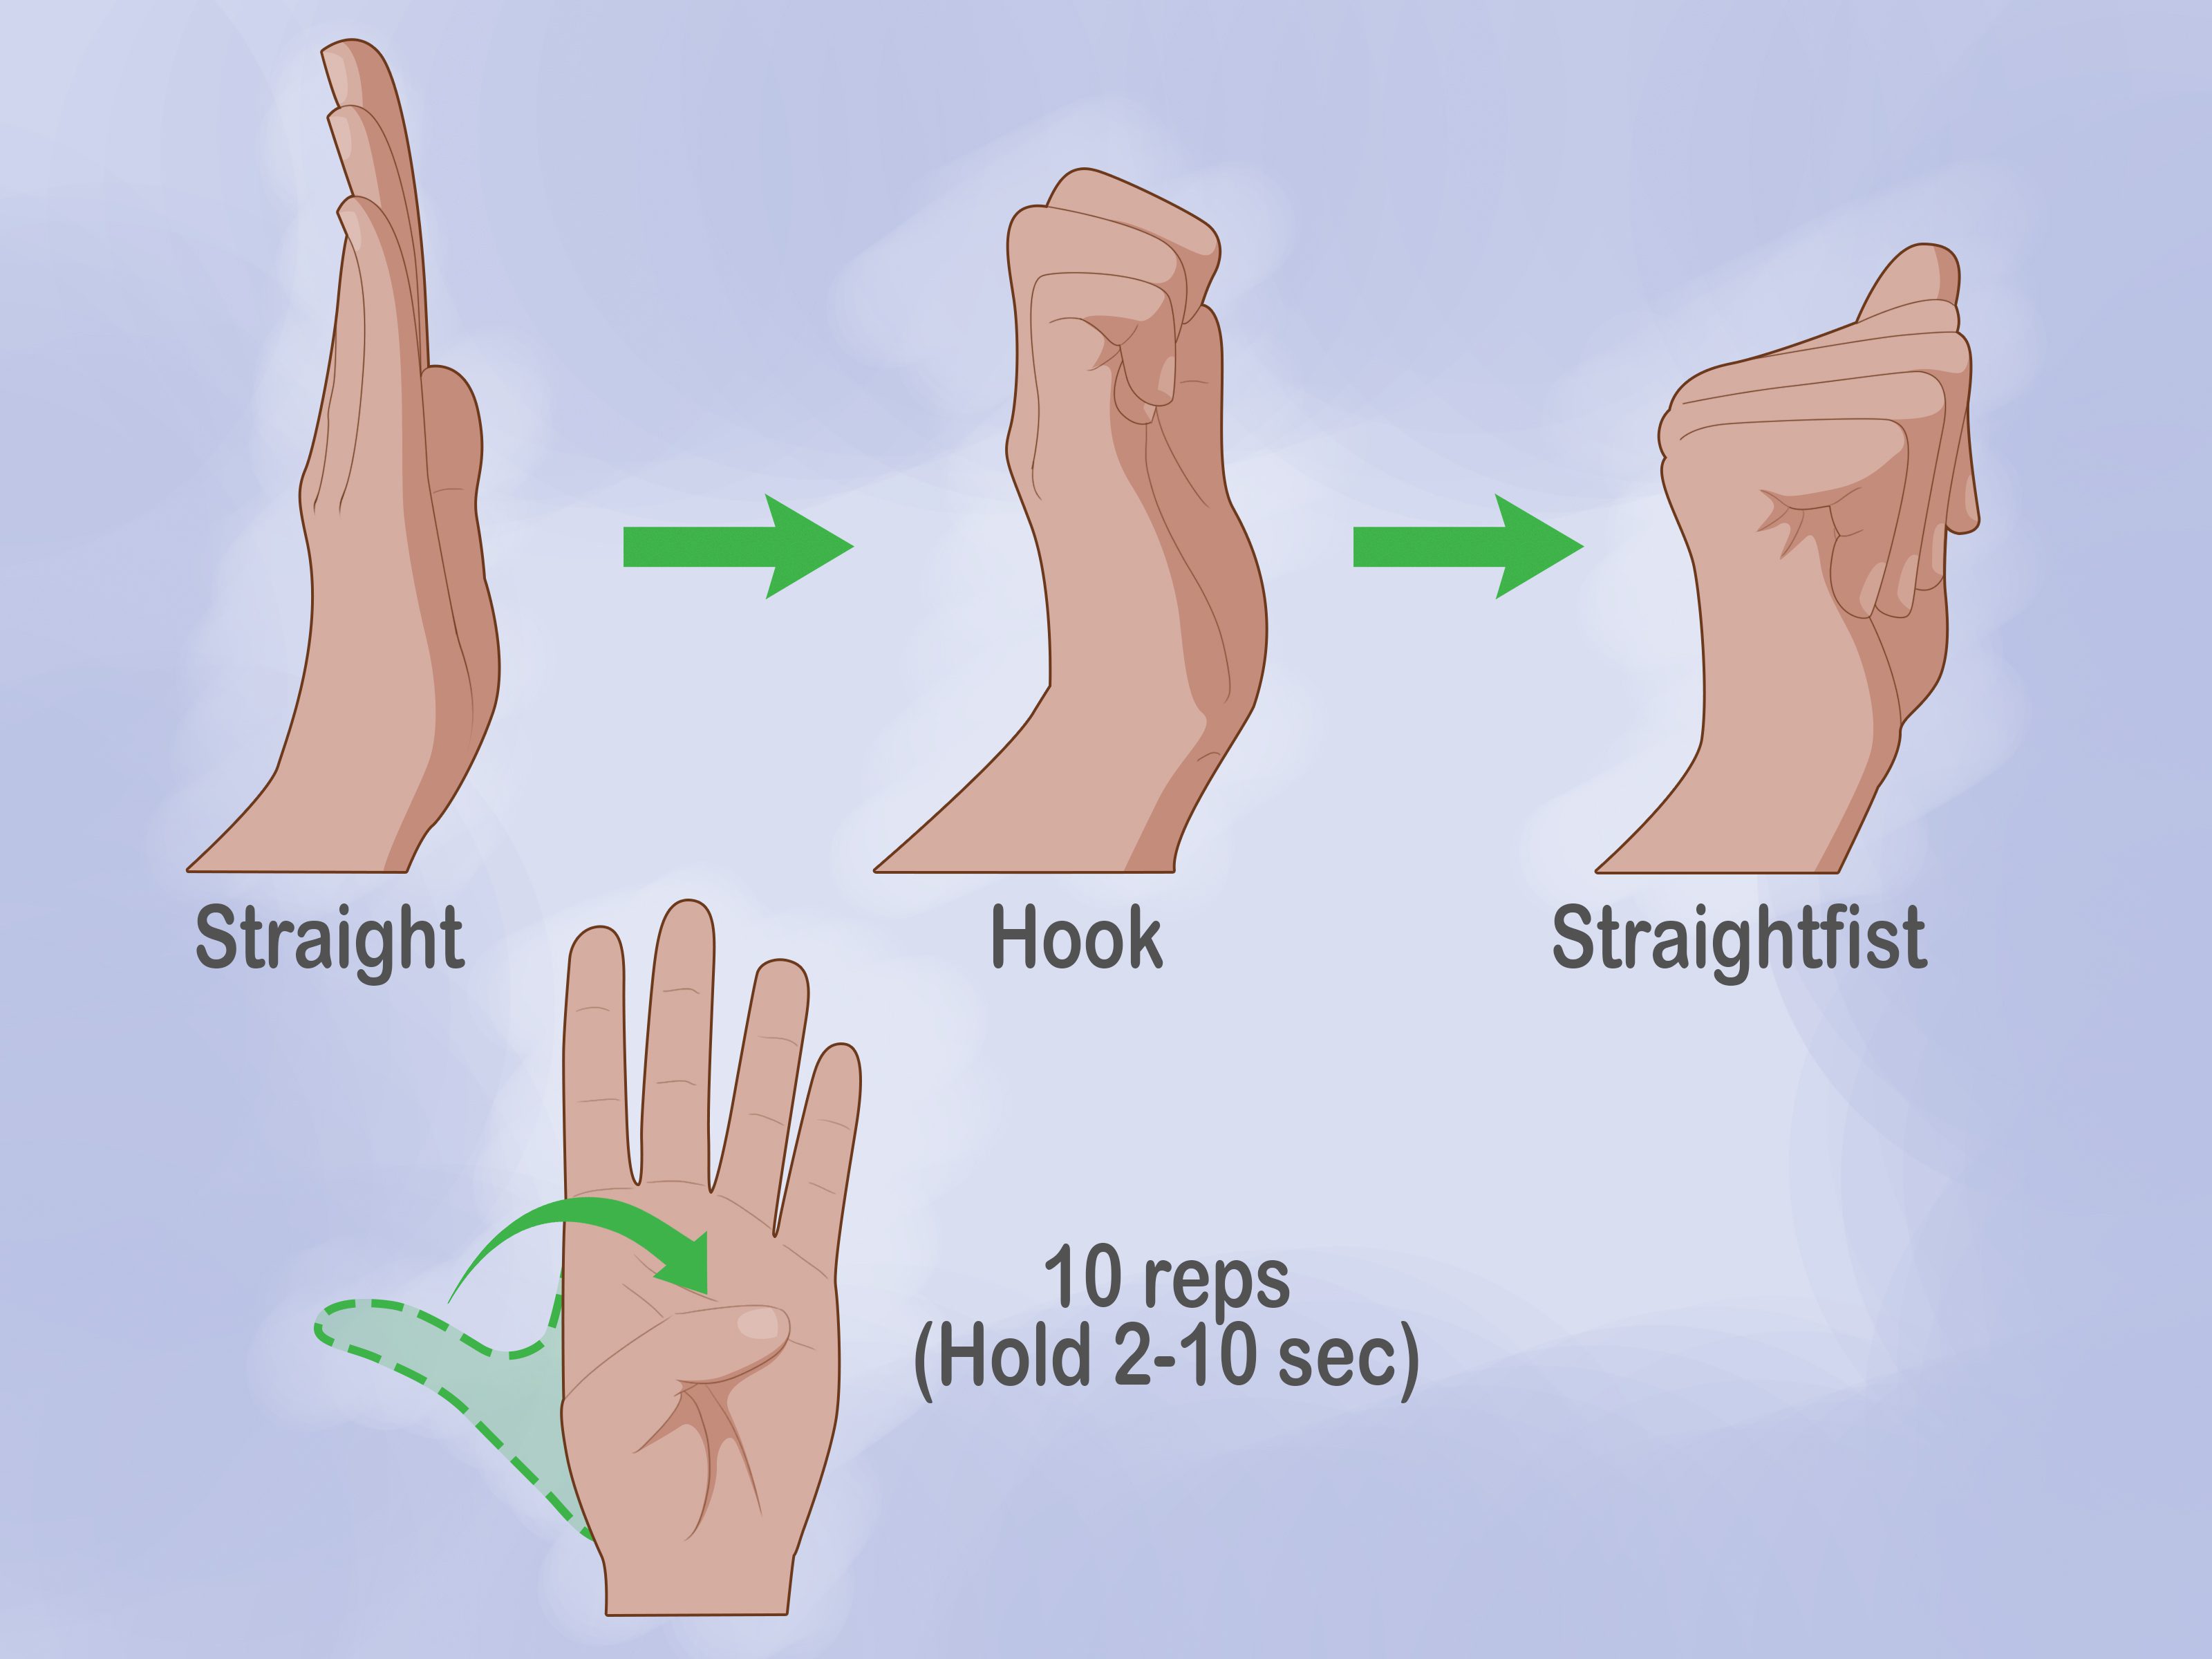 팔굽혀펴기 할 때 손목통증 예방법